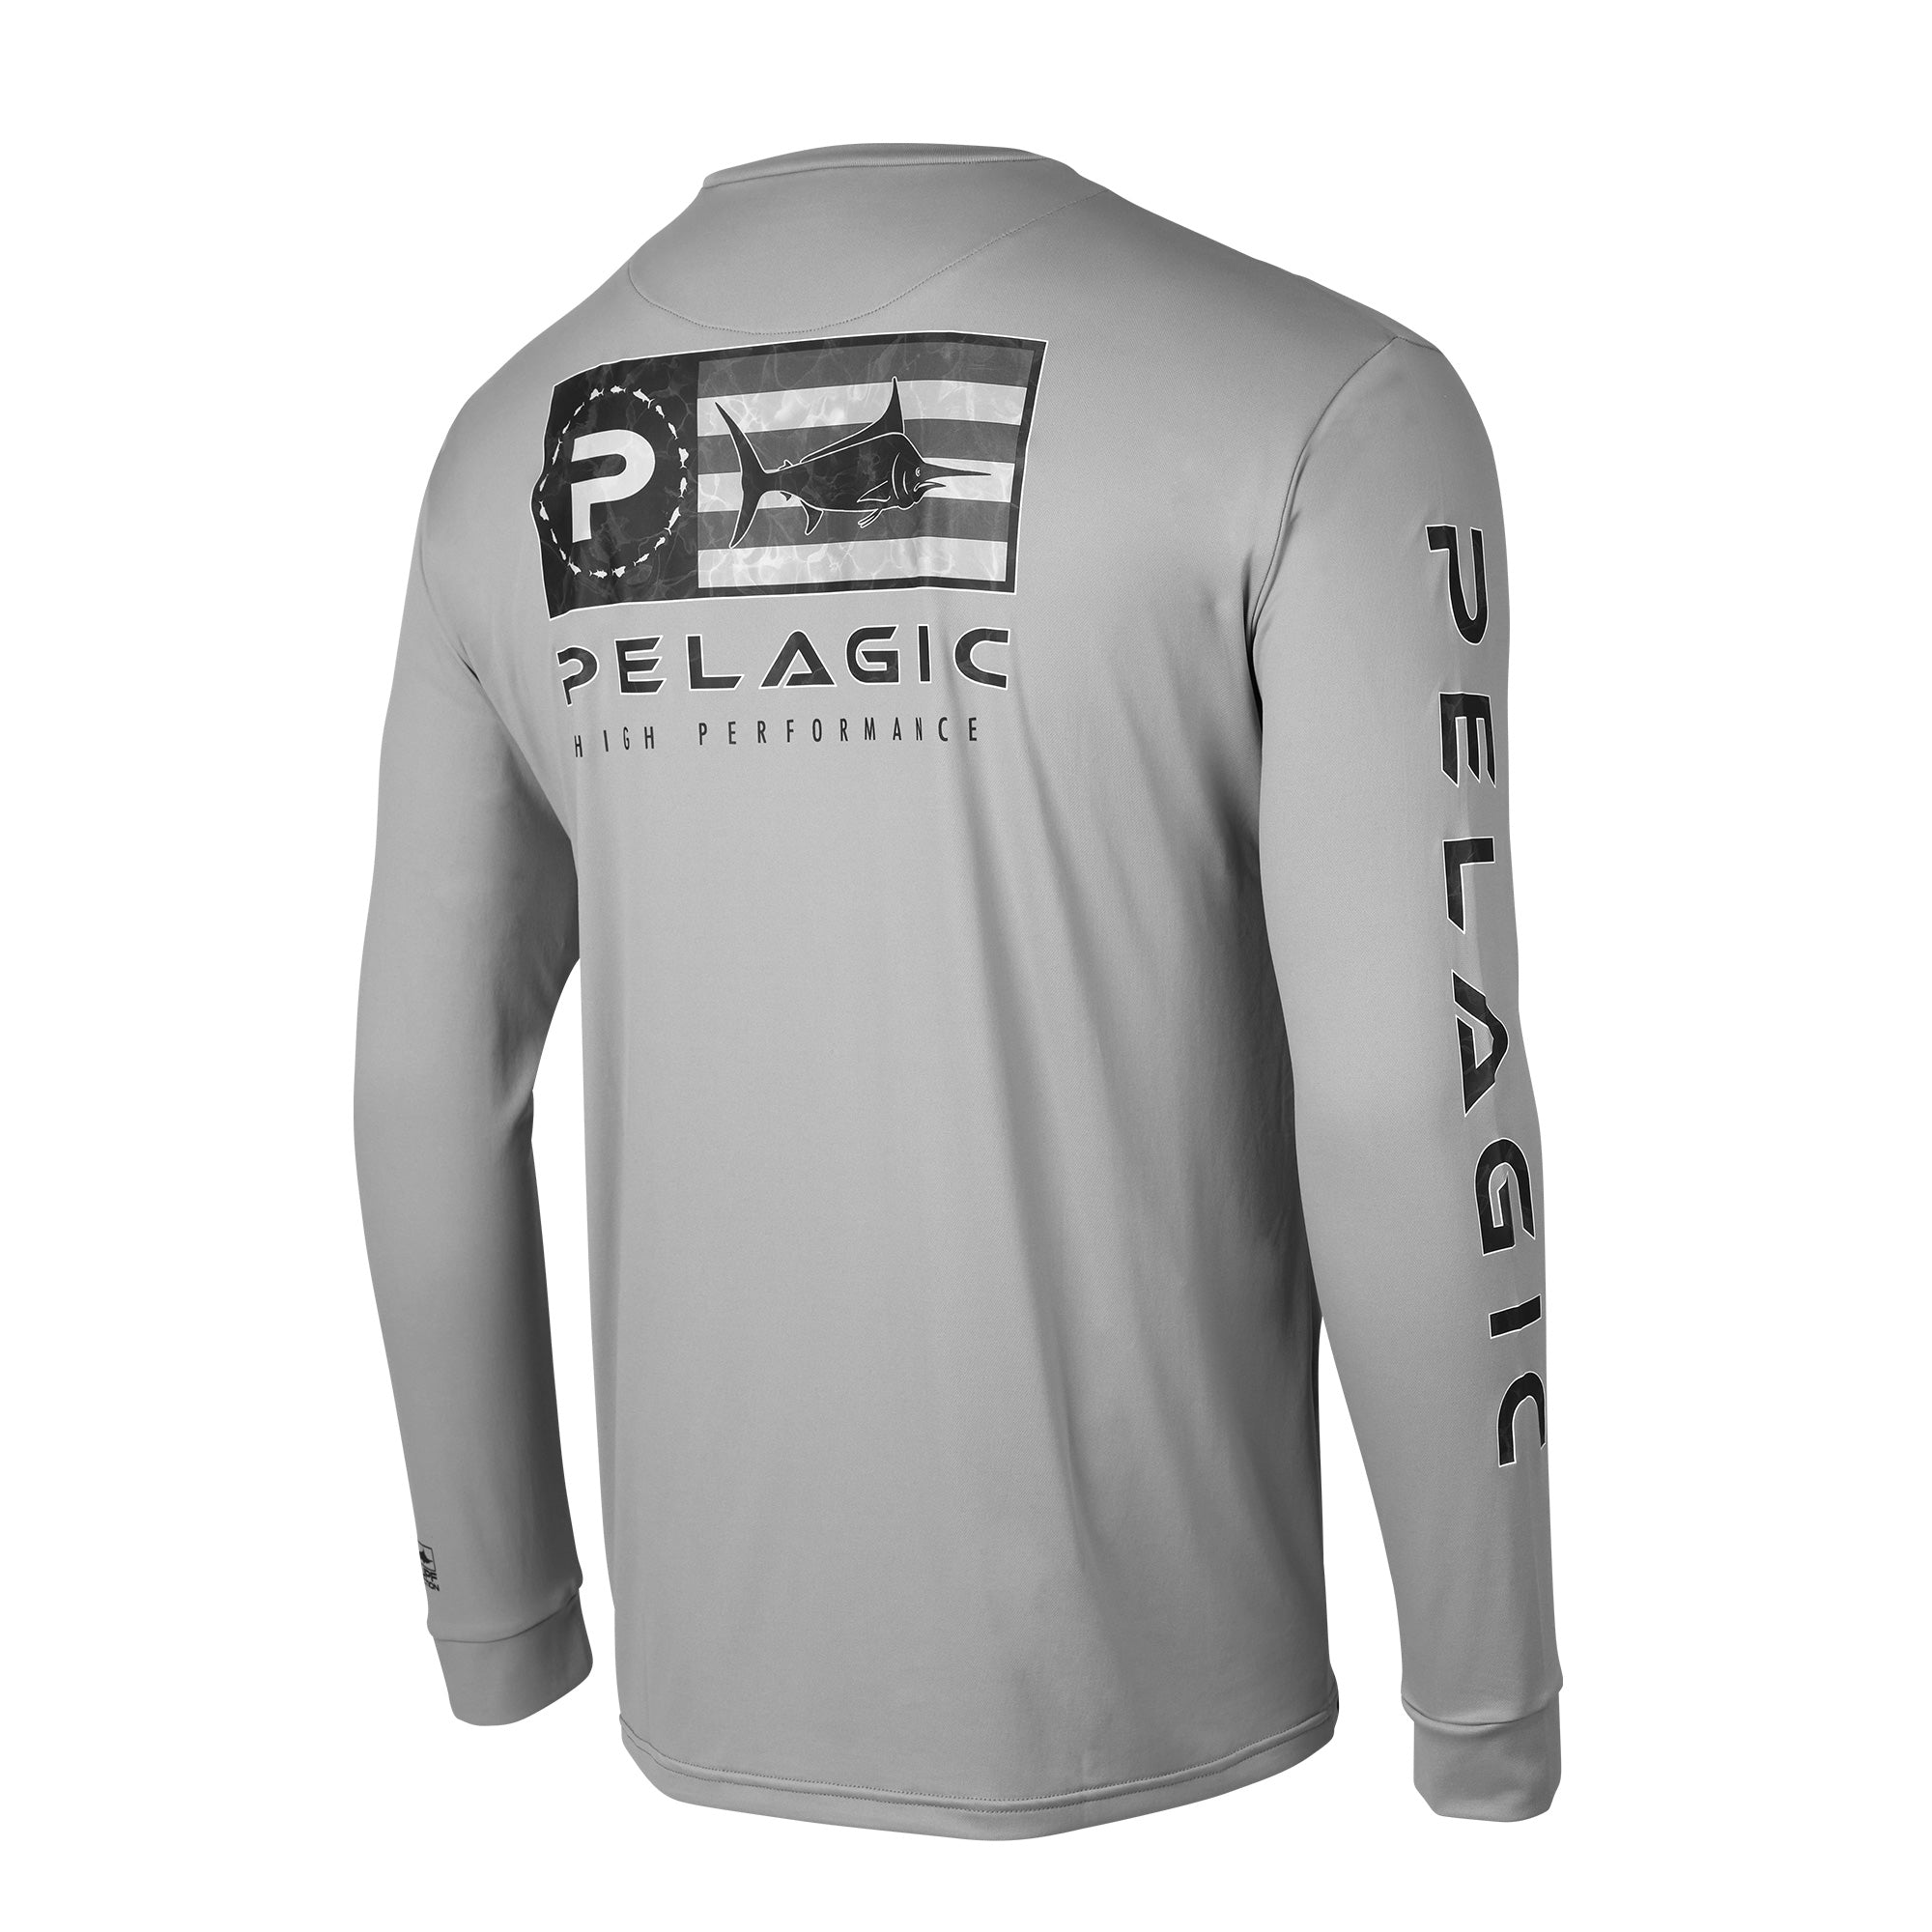 Fish Co. T-Shirt  PELAGIC Fishing Gear